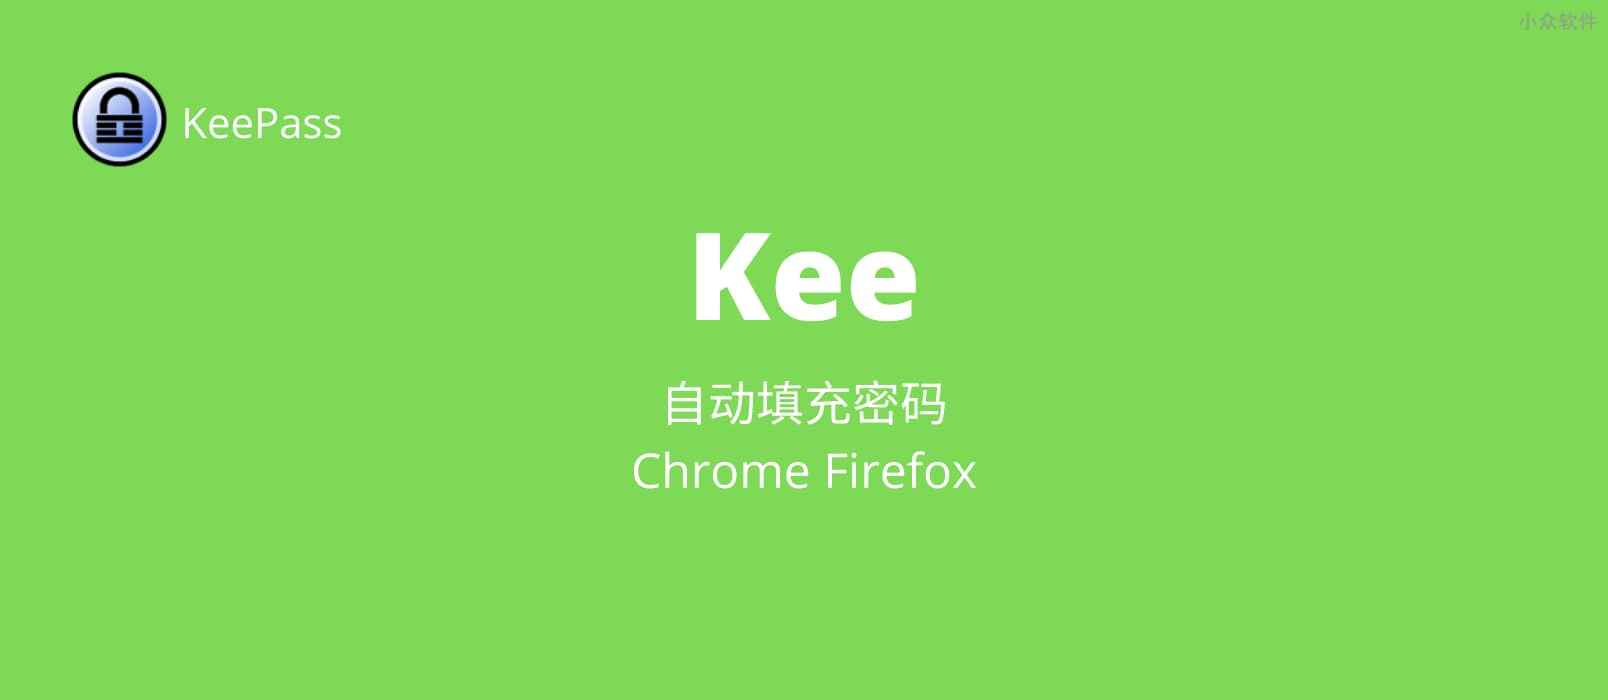 支持 Chrome、Firefox 自动填充密码并提交登录的 KeePass 扩展：Kee